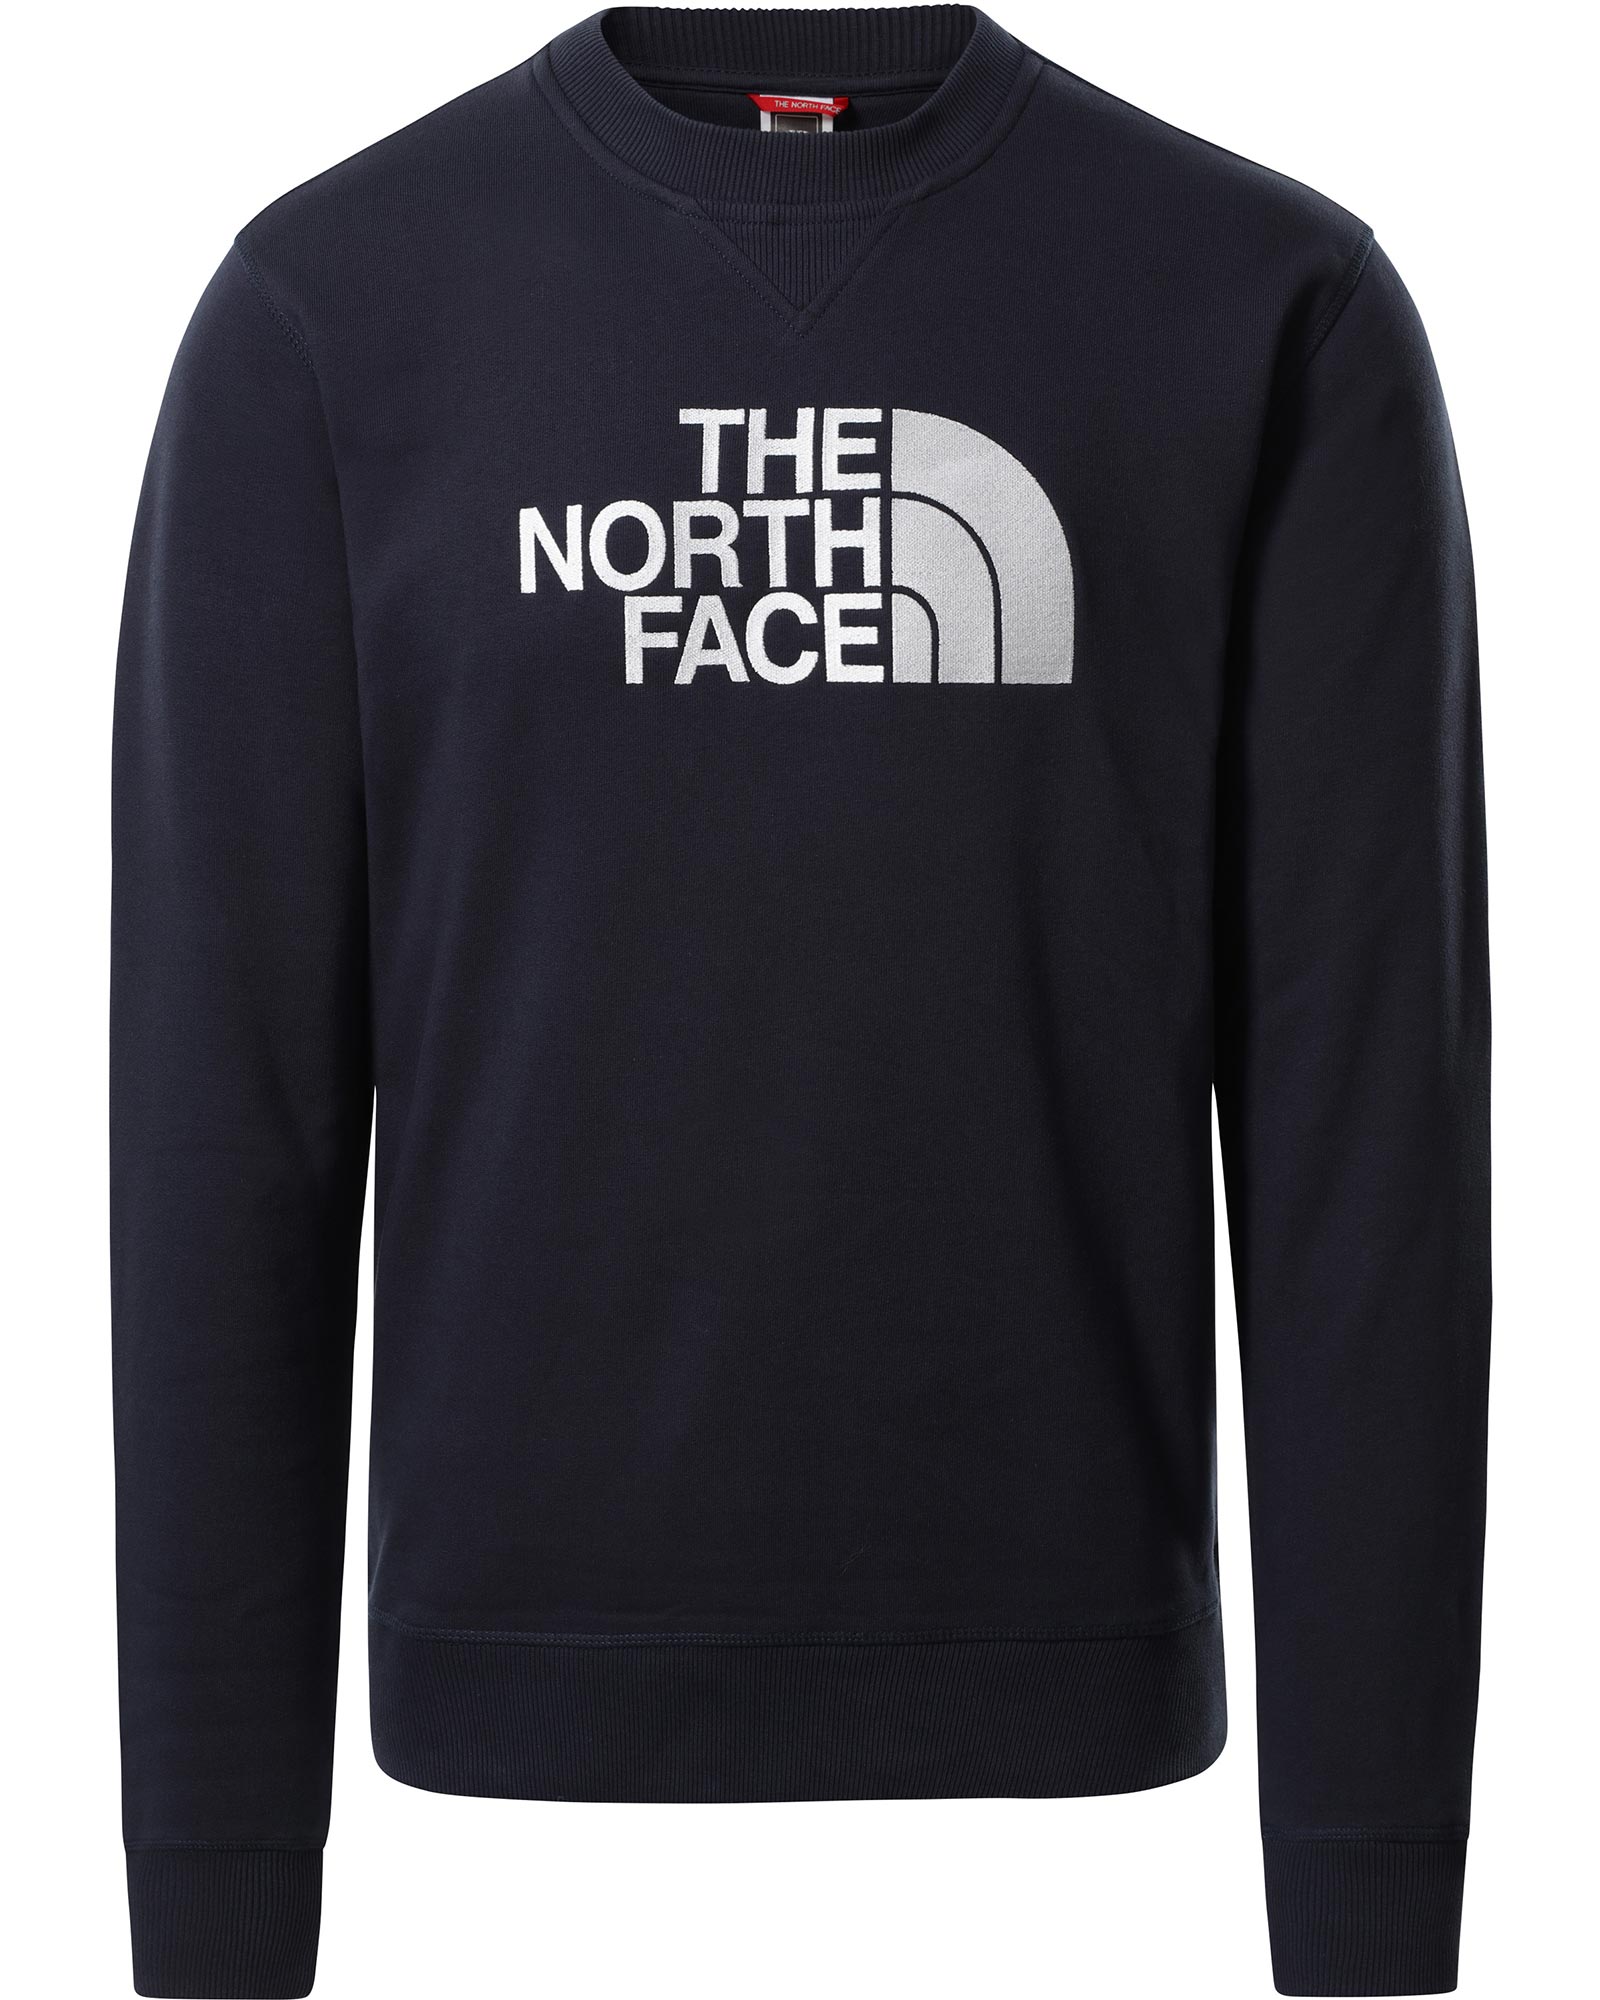 The North Face Drew Peak Men’s Crew - Urban Navy M